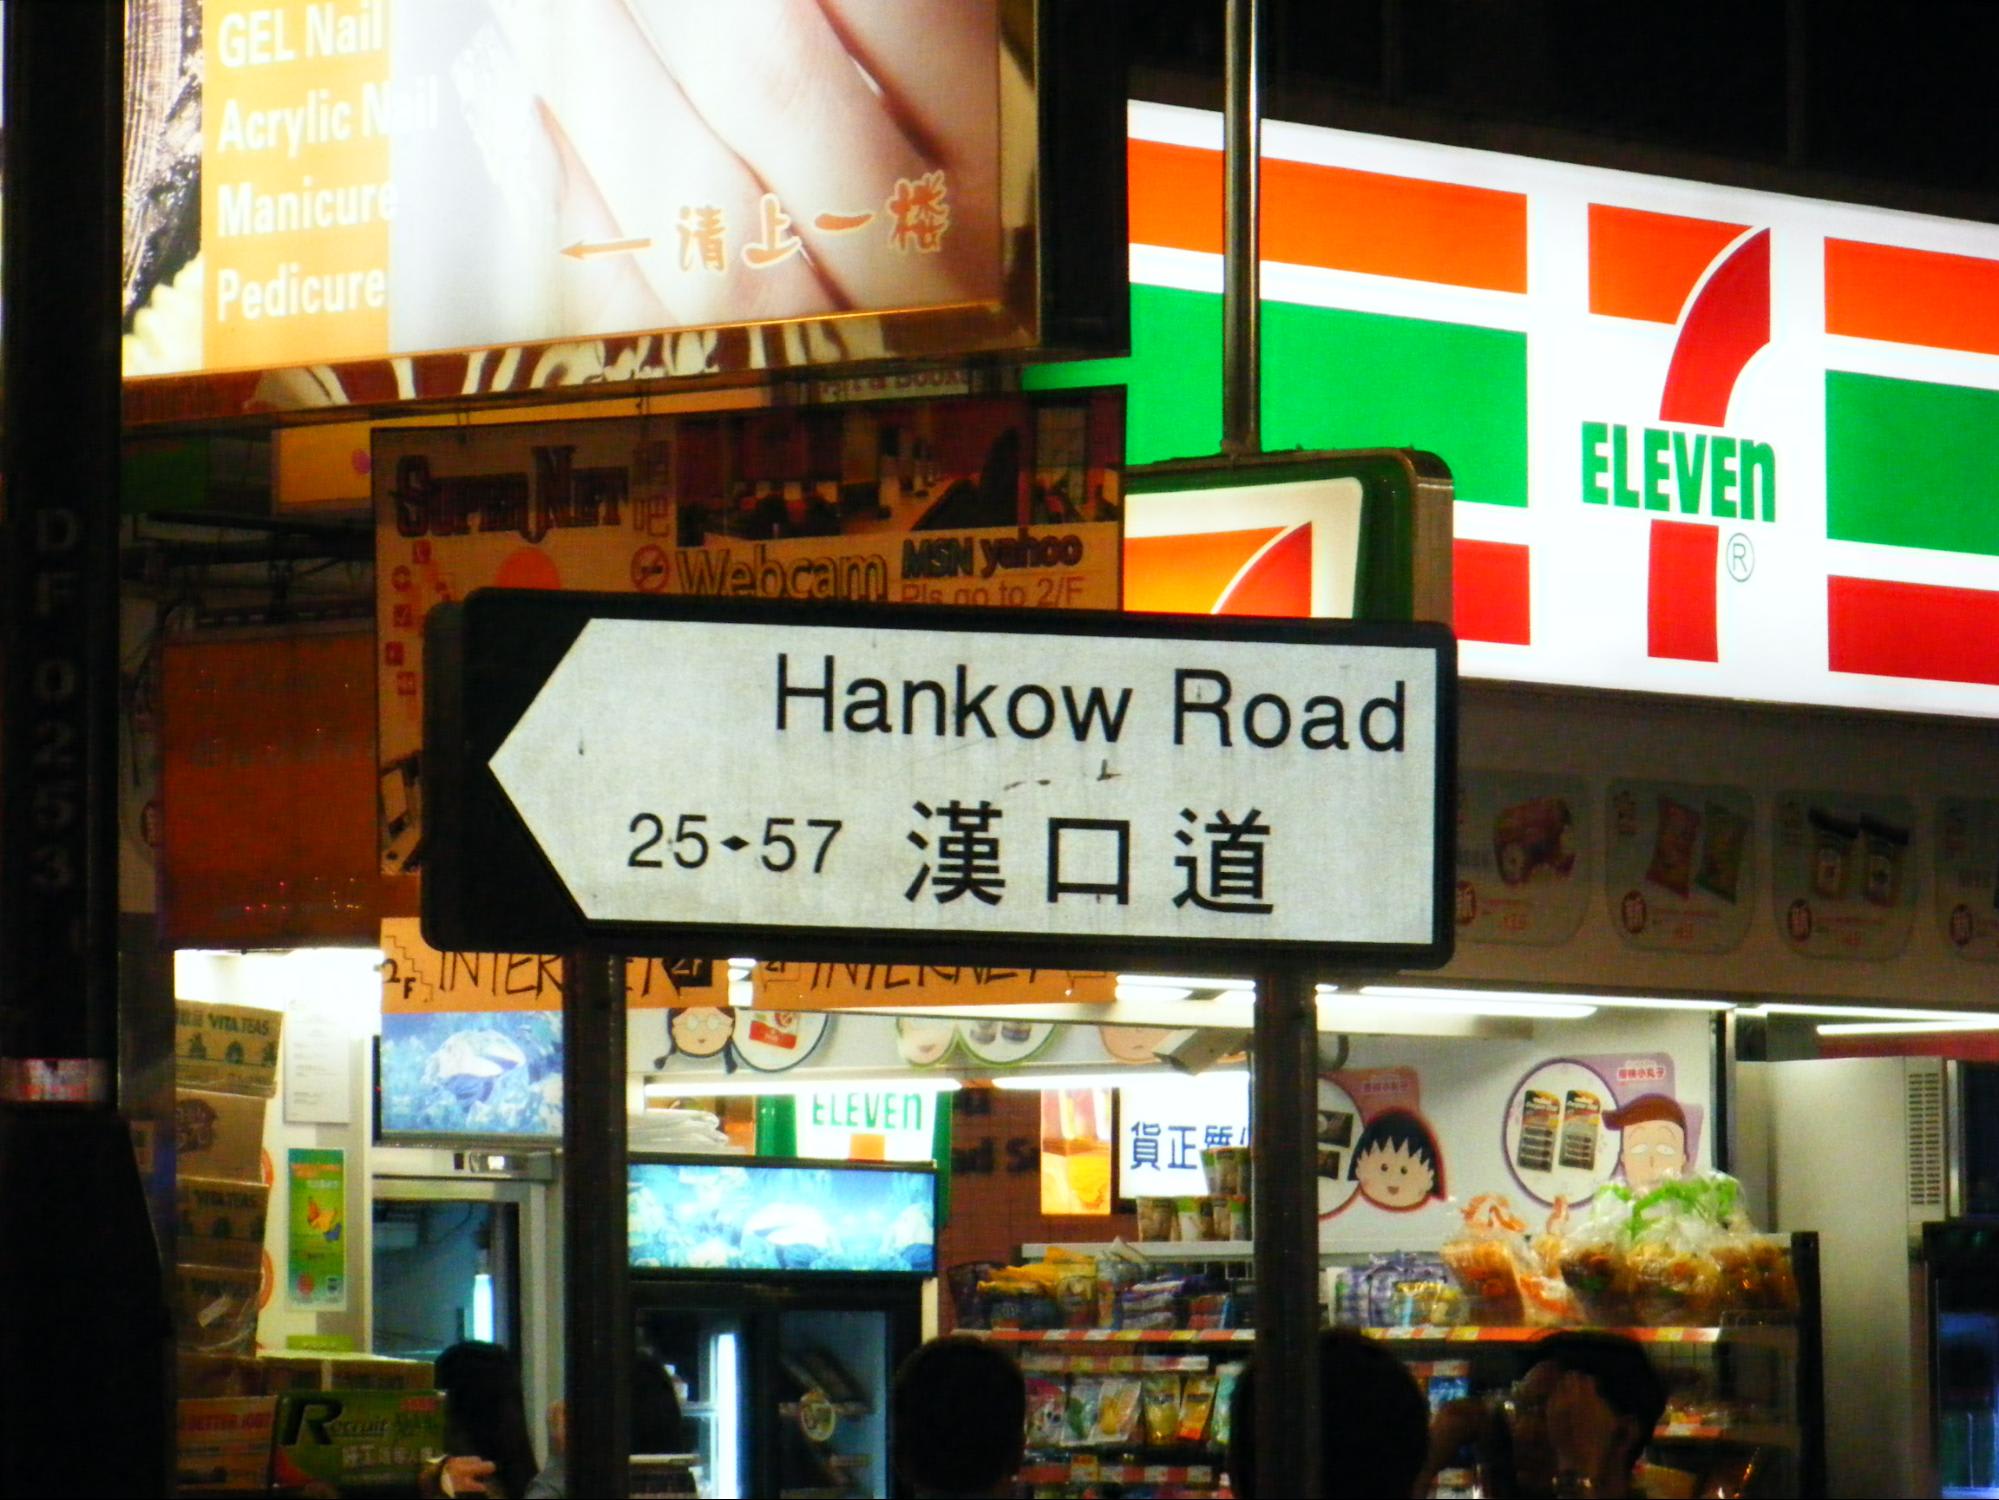 6. Hankow Road